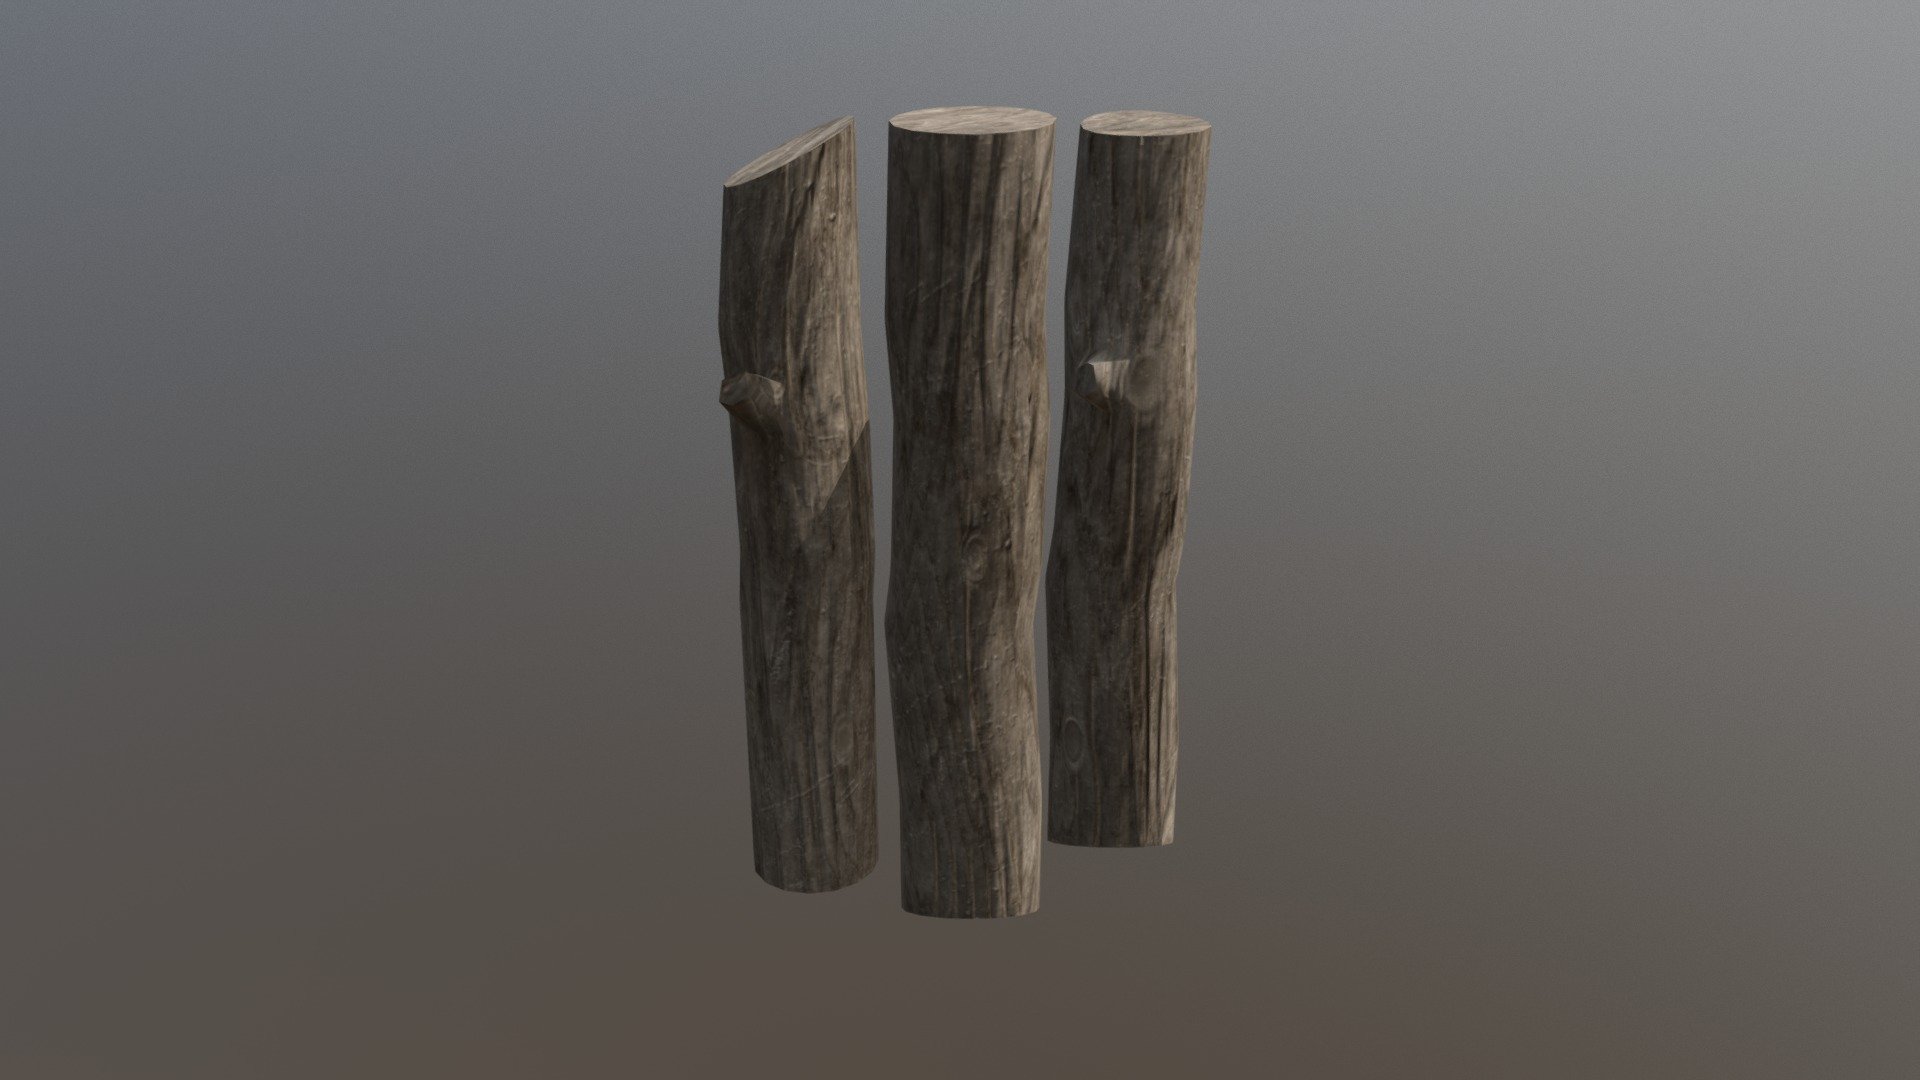 3 logs - Log - 3D model by KantoArison 3d model